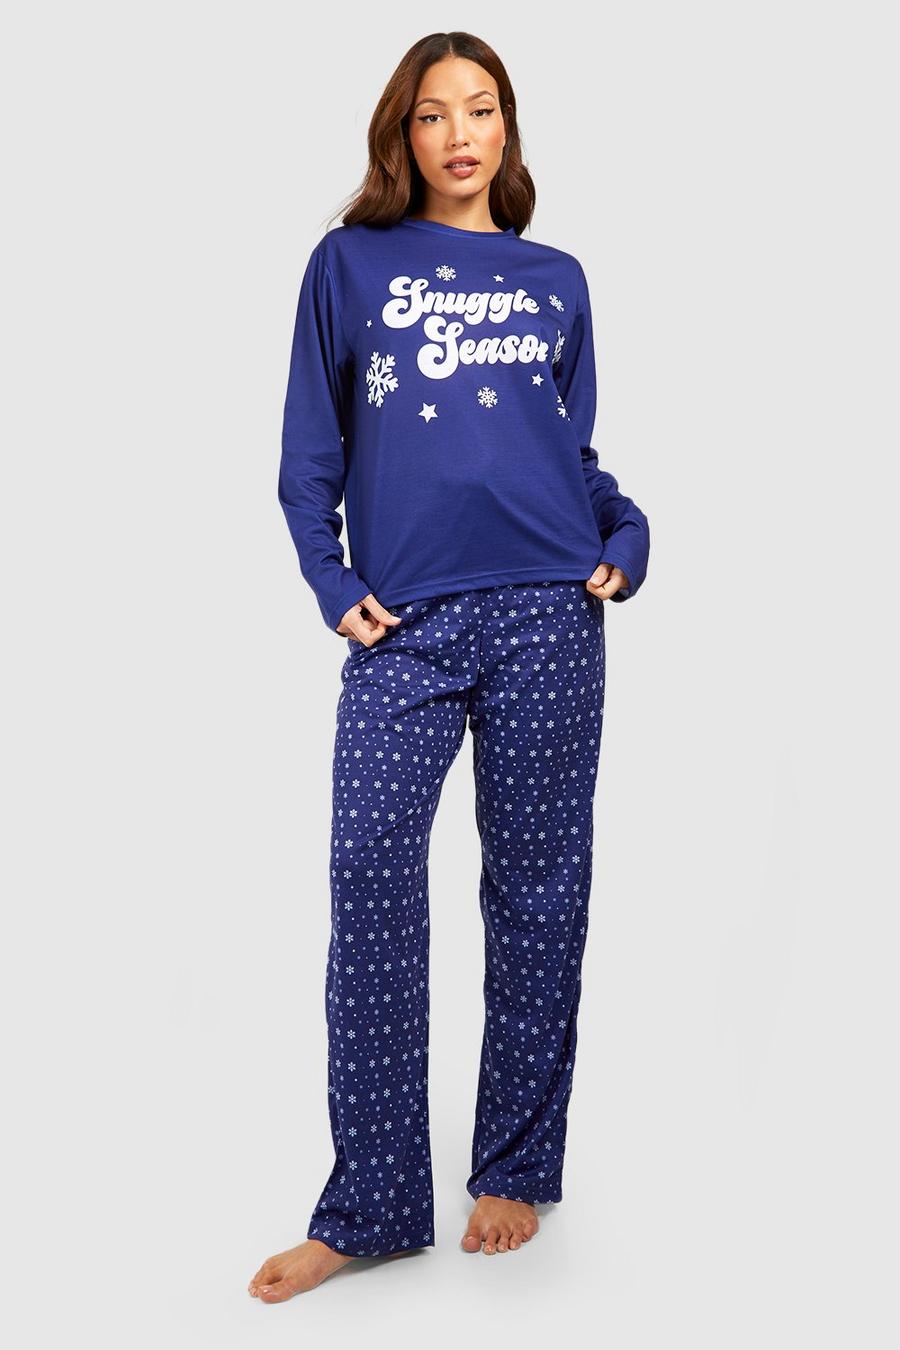 Blue Tall Snuggle Season Pyjama Set image number 1